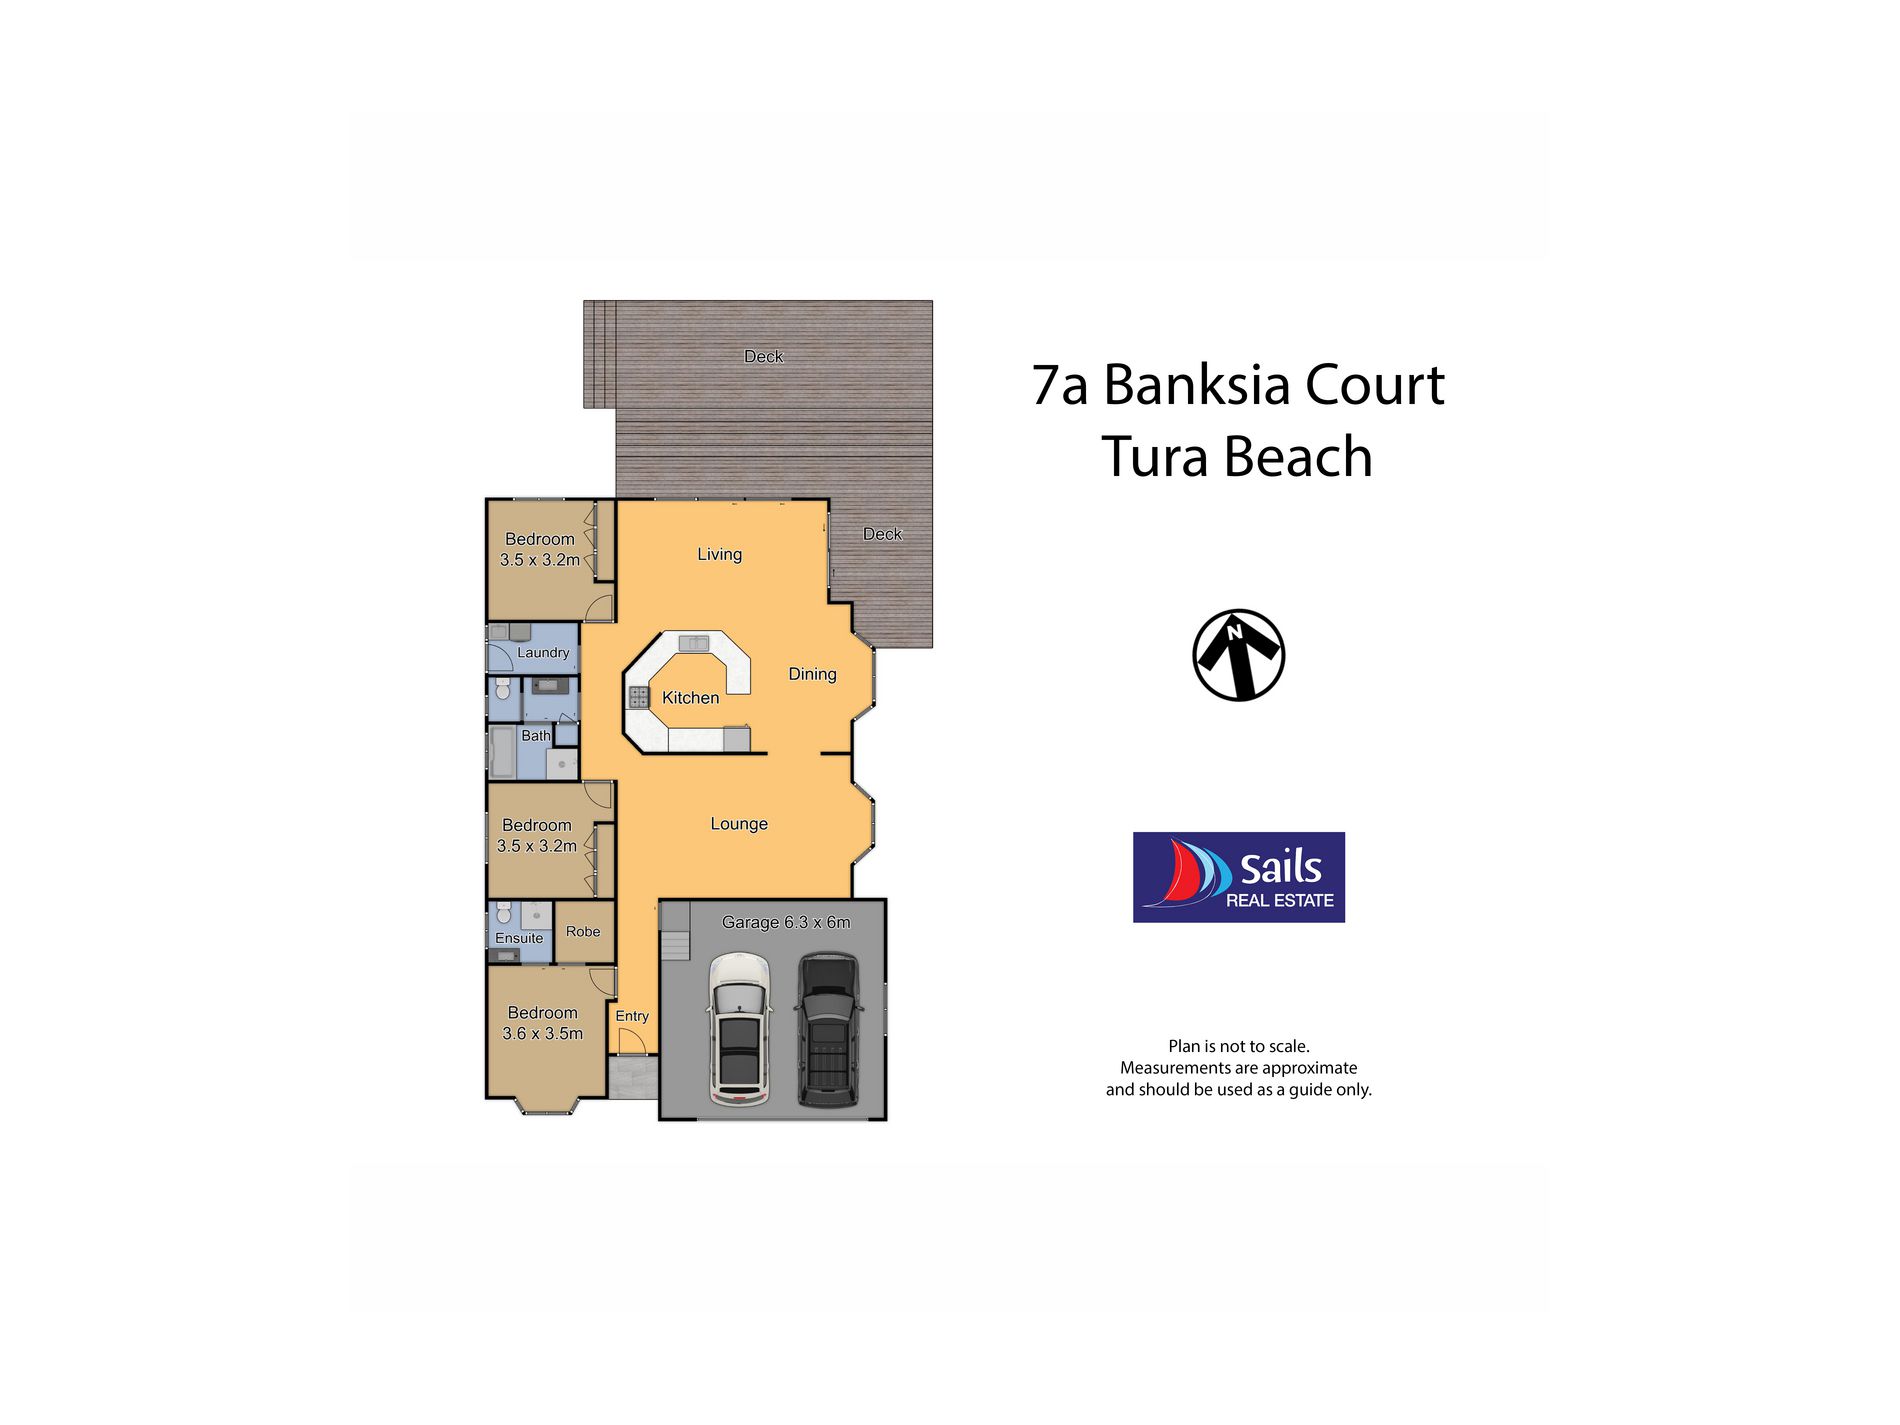 7a Banksia Court, Tura Beach